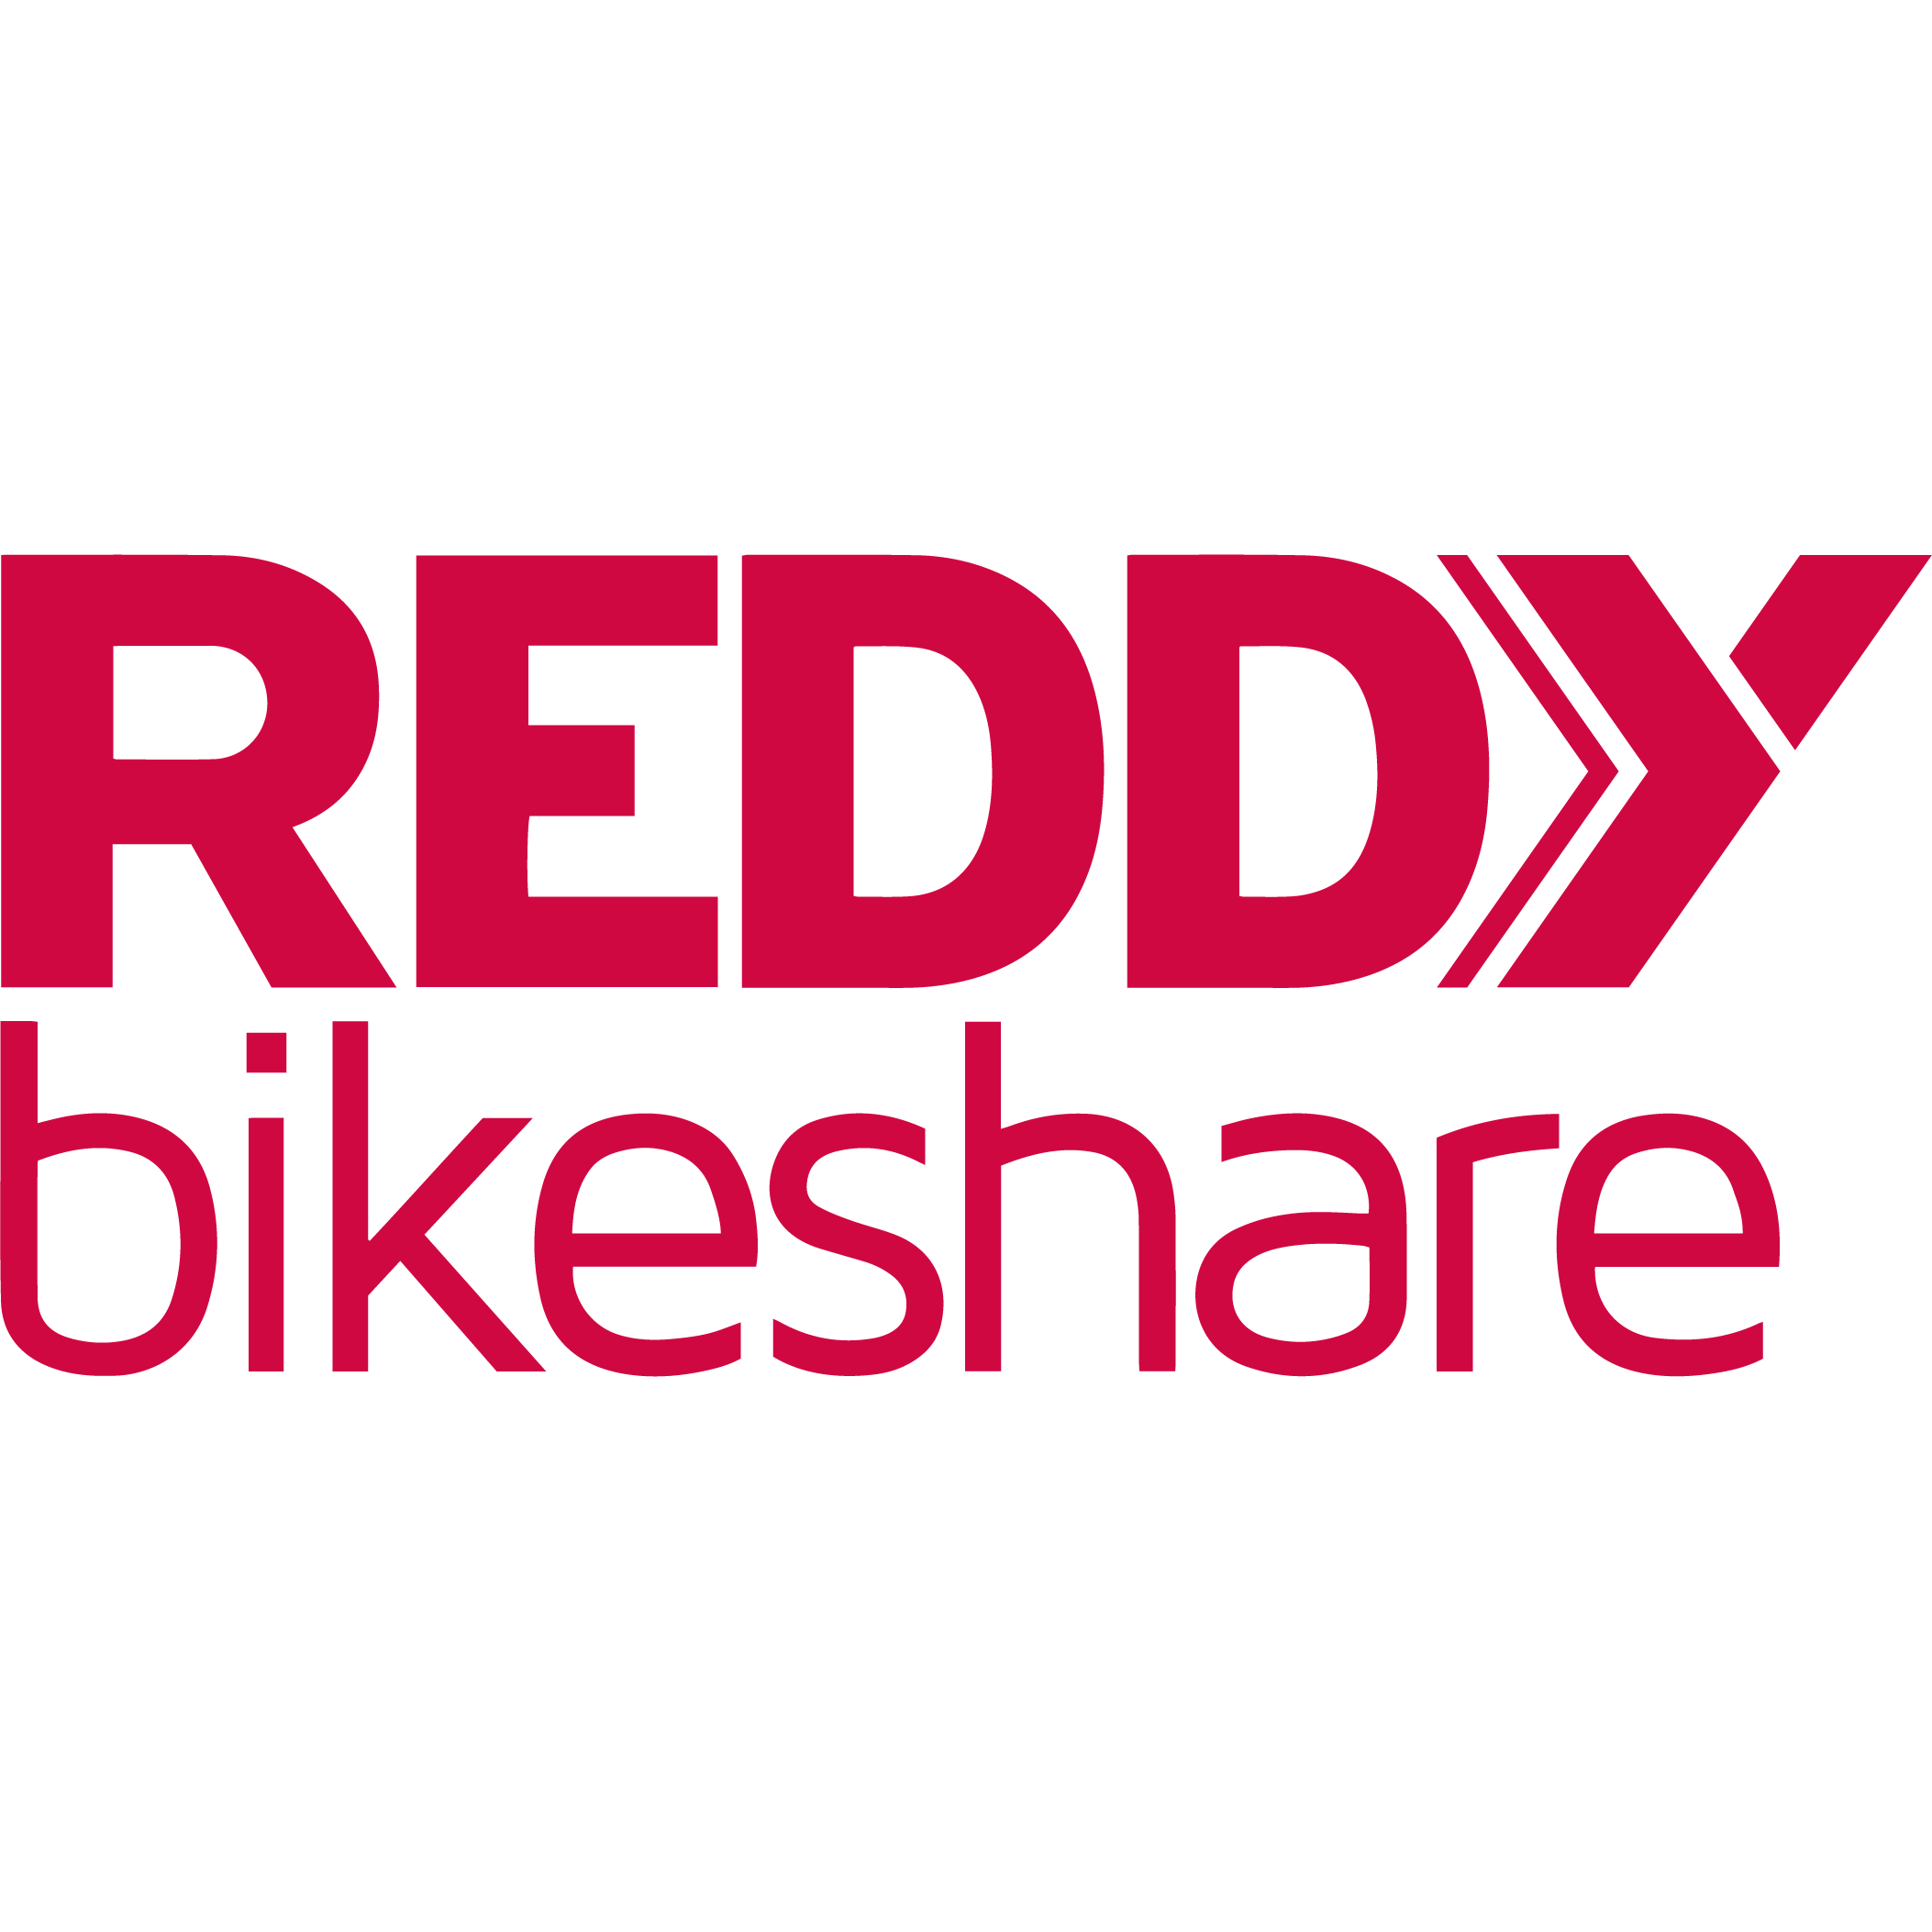 Reddy Bikeshare